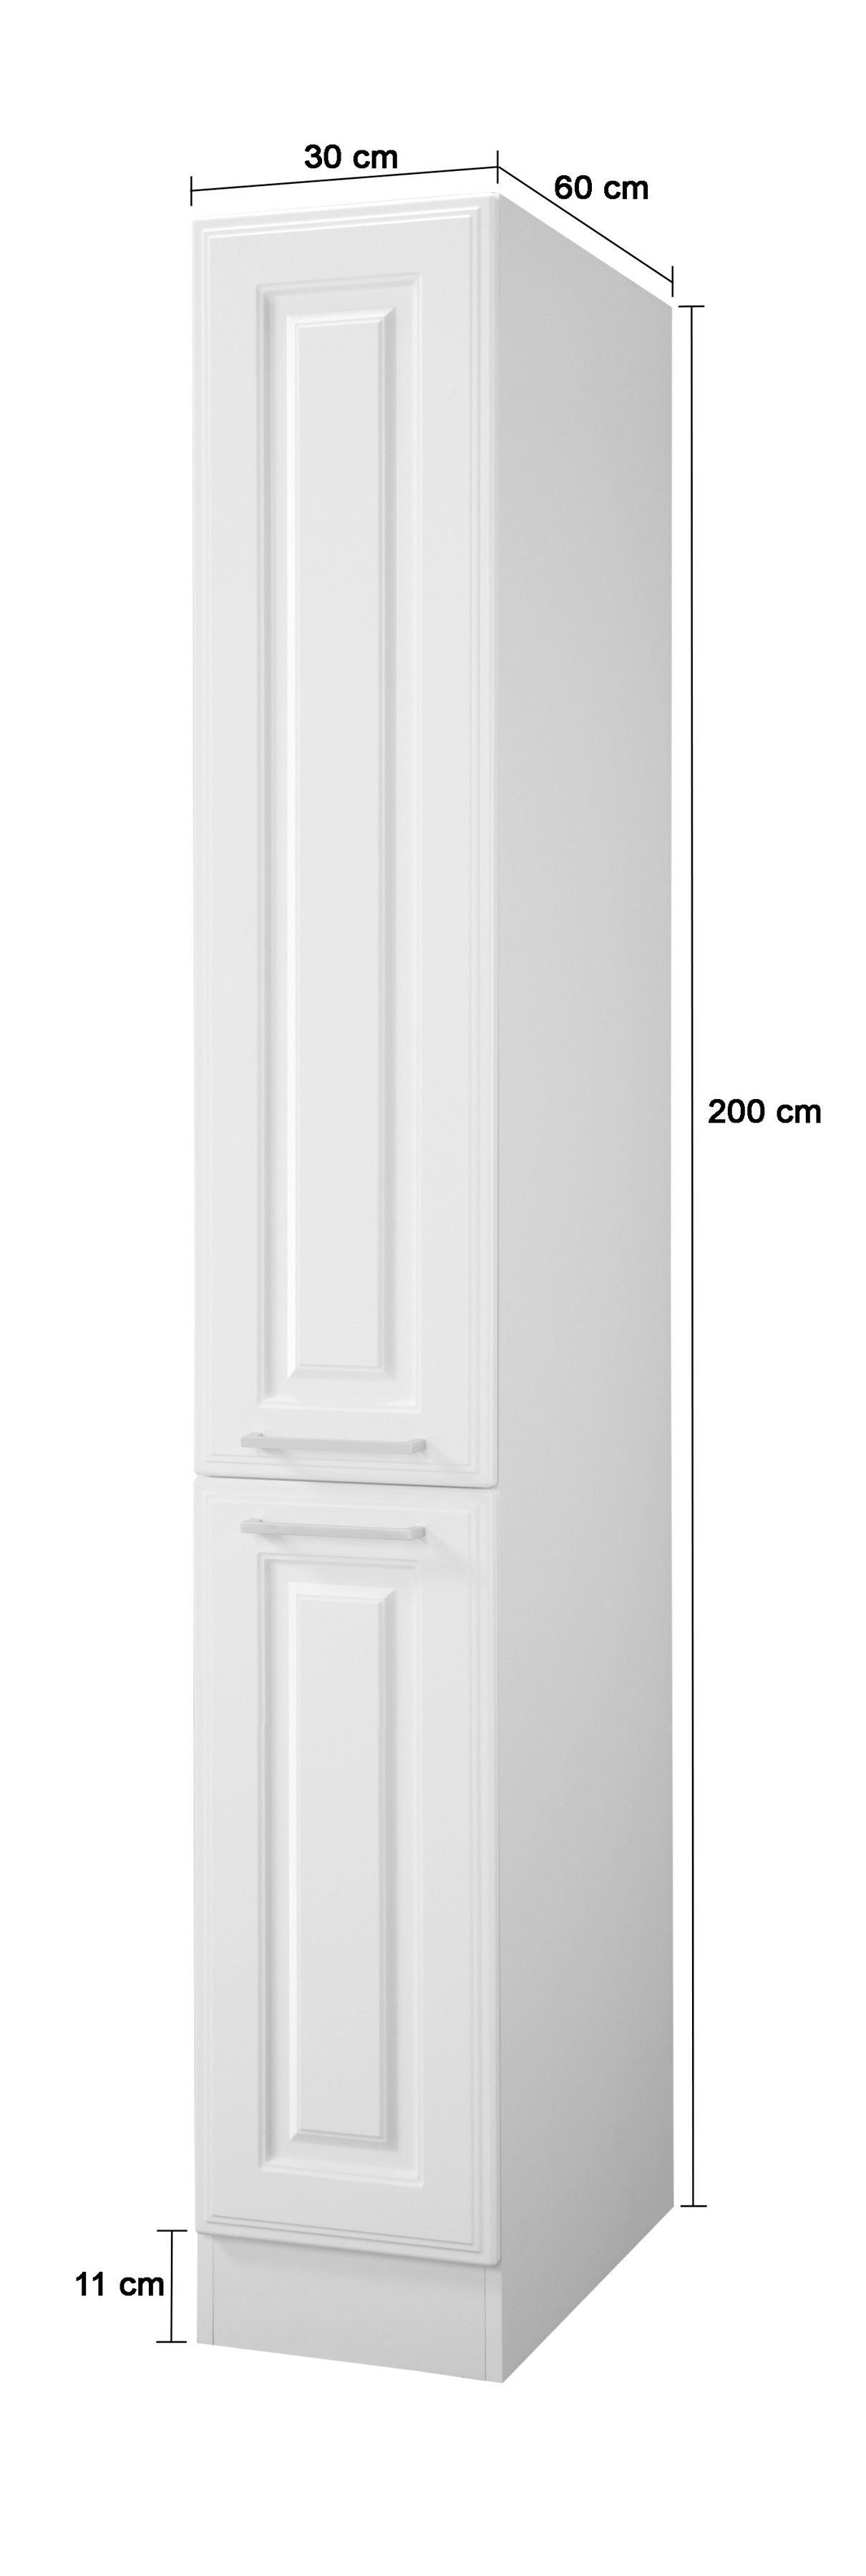 Apothekerschrank hoch, weiß/weiß 200 cm MÖBEL HELD 30 cm MDF-Fronten, Breite viel Stauraum Stockholm, hochwertige